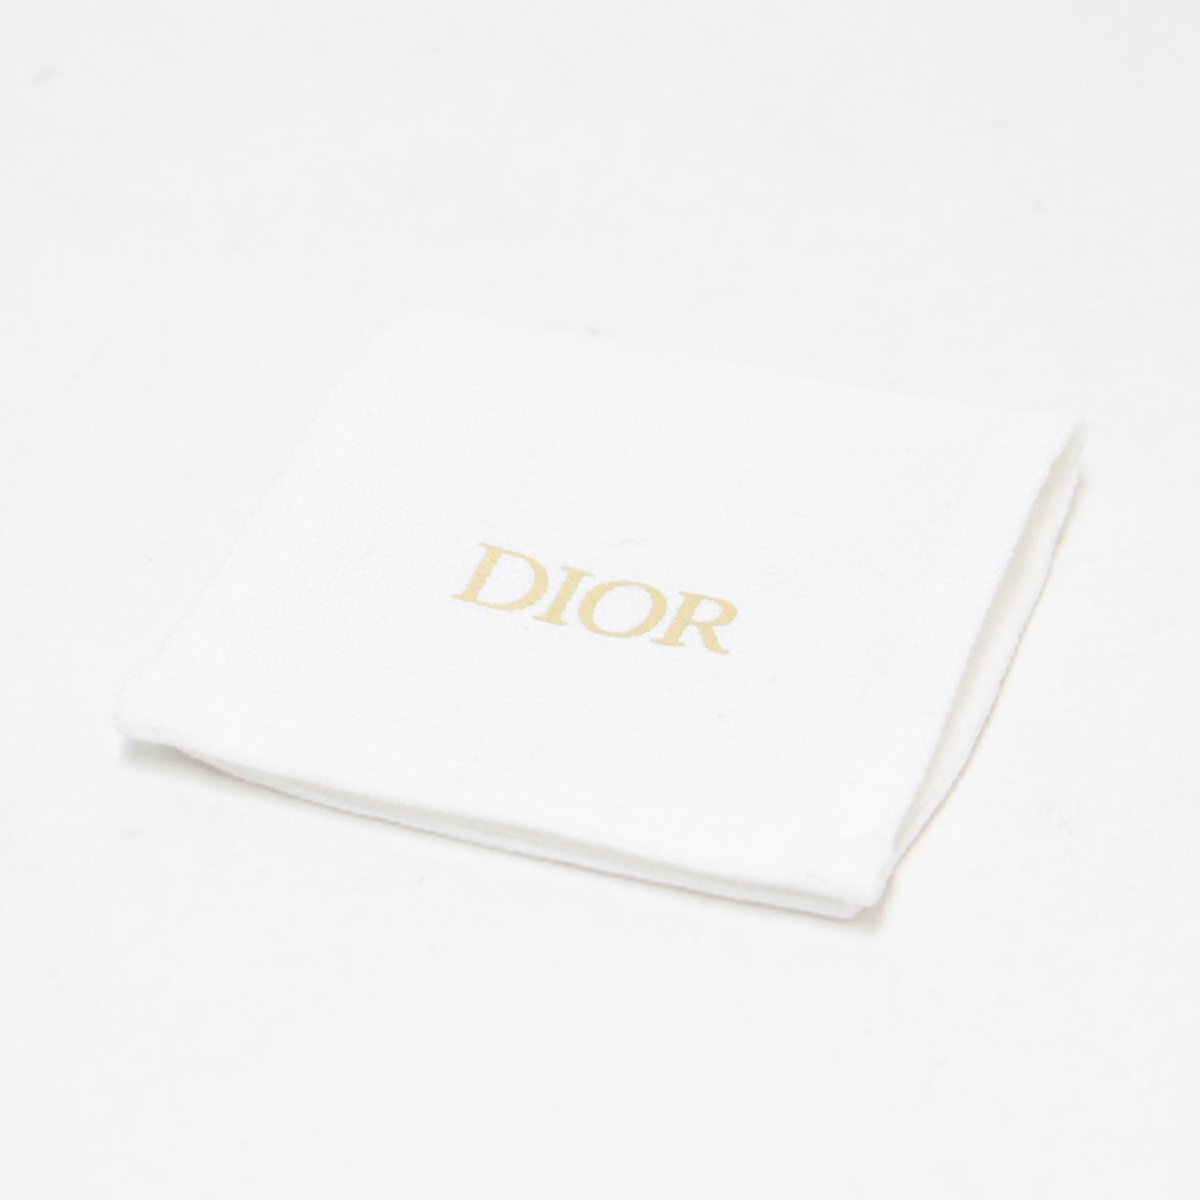 美品 Dior ディオール ピアス ゴールド ロゴ パール ビジュー jadior 両耳用 アクセサリー ジュエリー ハイブランド ラグジュアリー_画像5